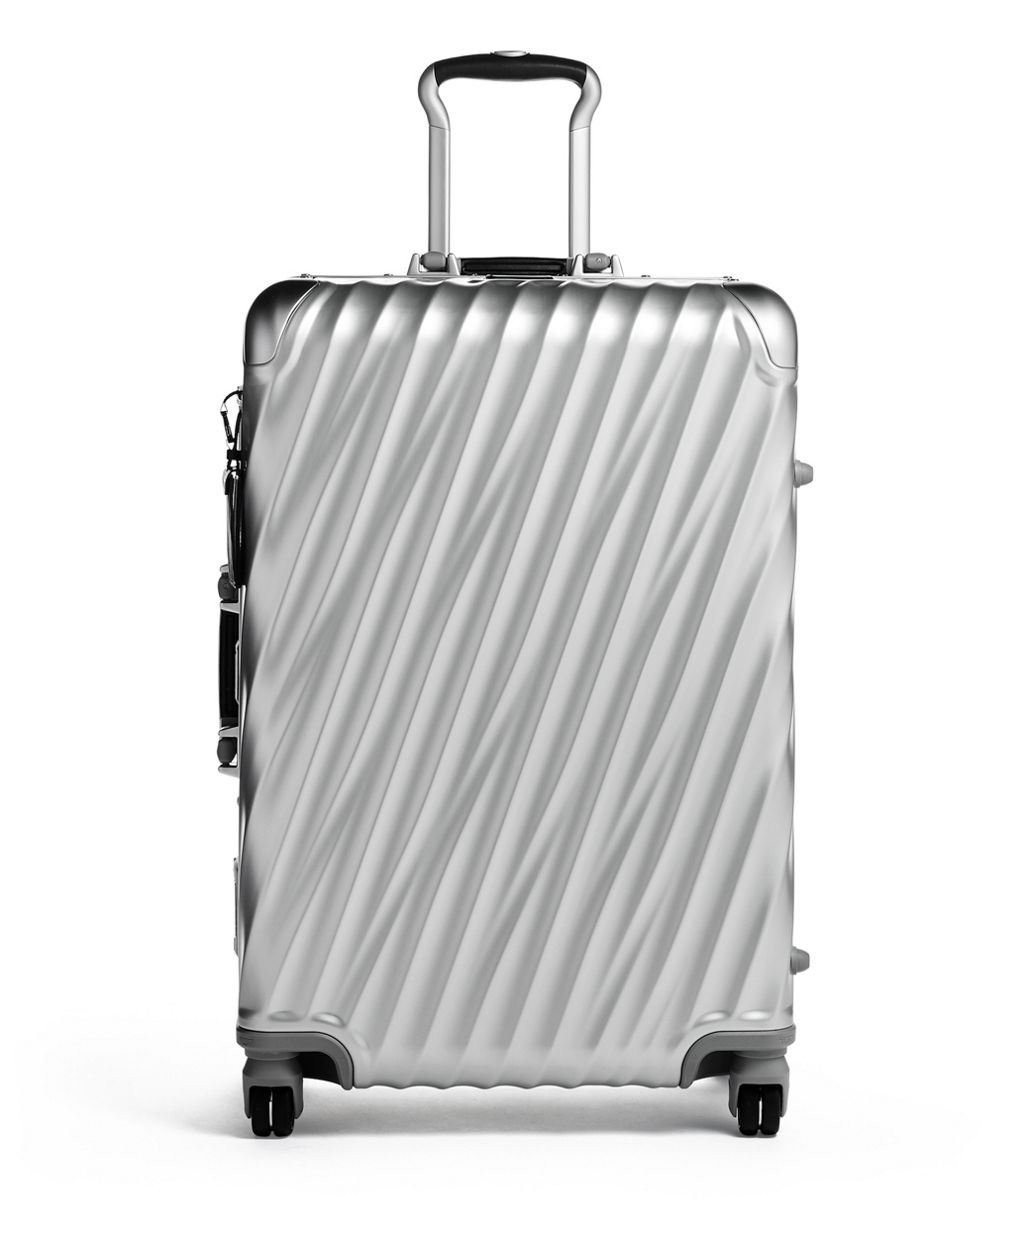 Luggage Horizon 55 Titane Travel